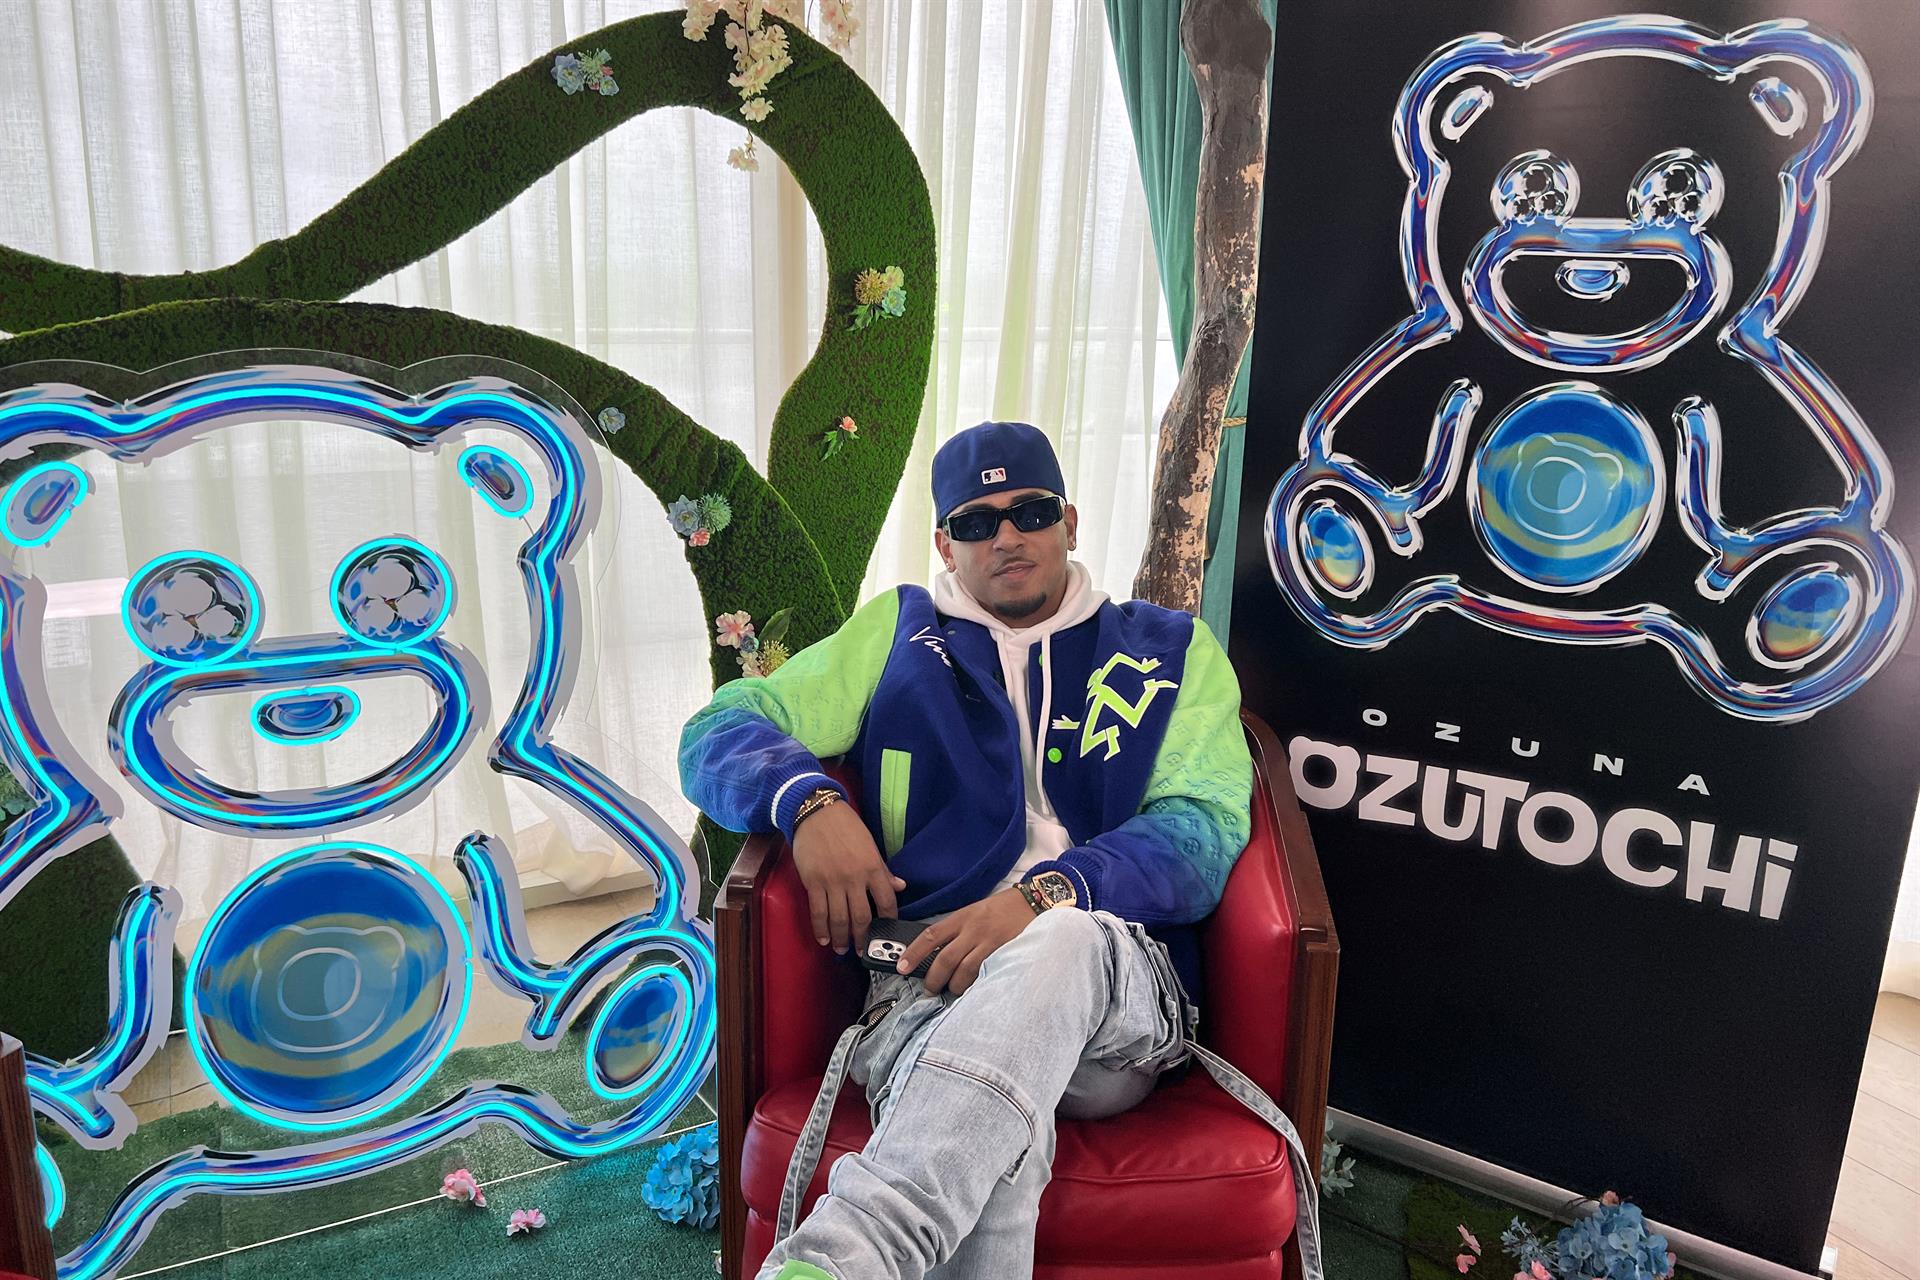 Ozuna lanza un nuevo disco Ozutochi, que presentará en el barrio de La Perla